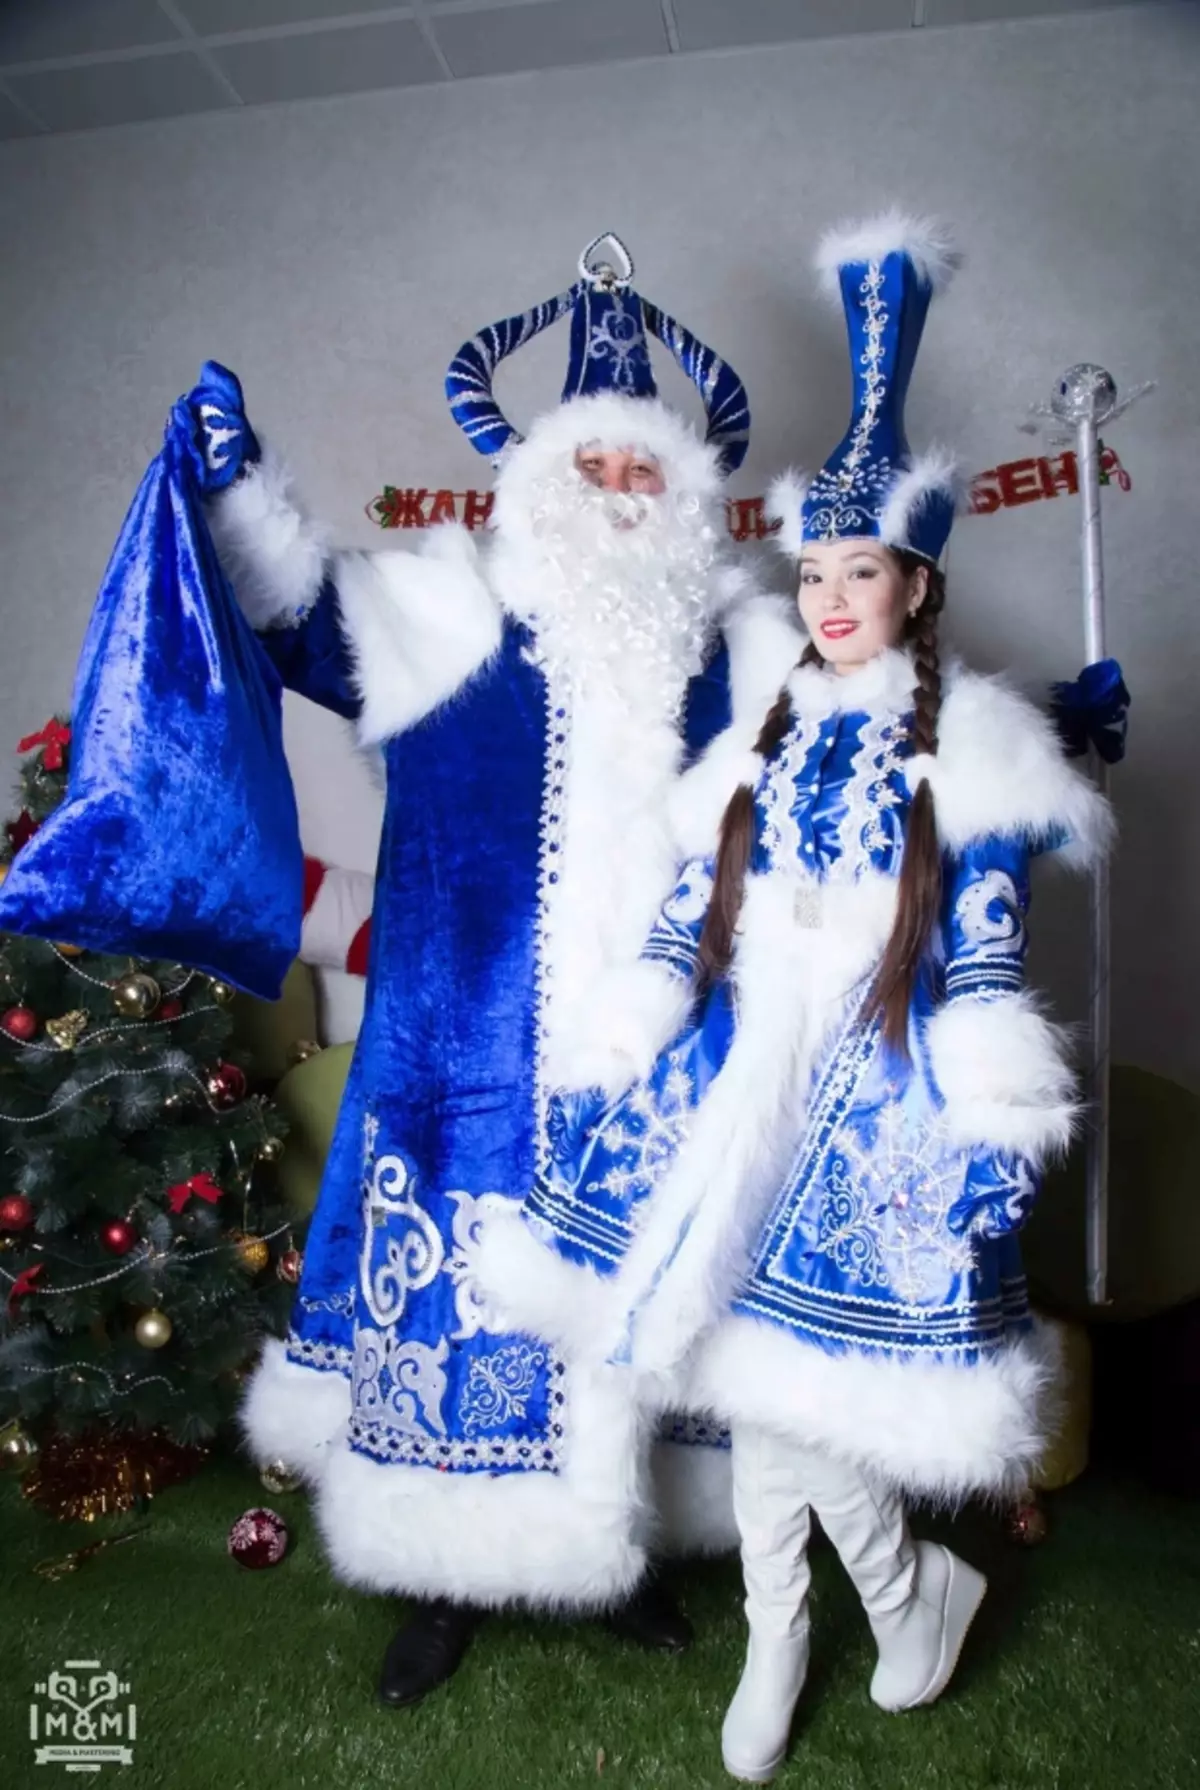 Kazakh Año Nuevo: ¿Cómo celebrar las fiestas de Año Nuevo en Kazajstán? ¿Cuántos kazajos están descansando? Tradiciones y costumbres en vacaciones. 24567_7